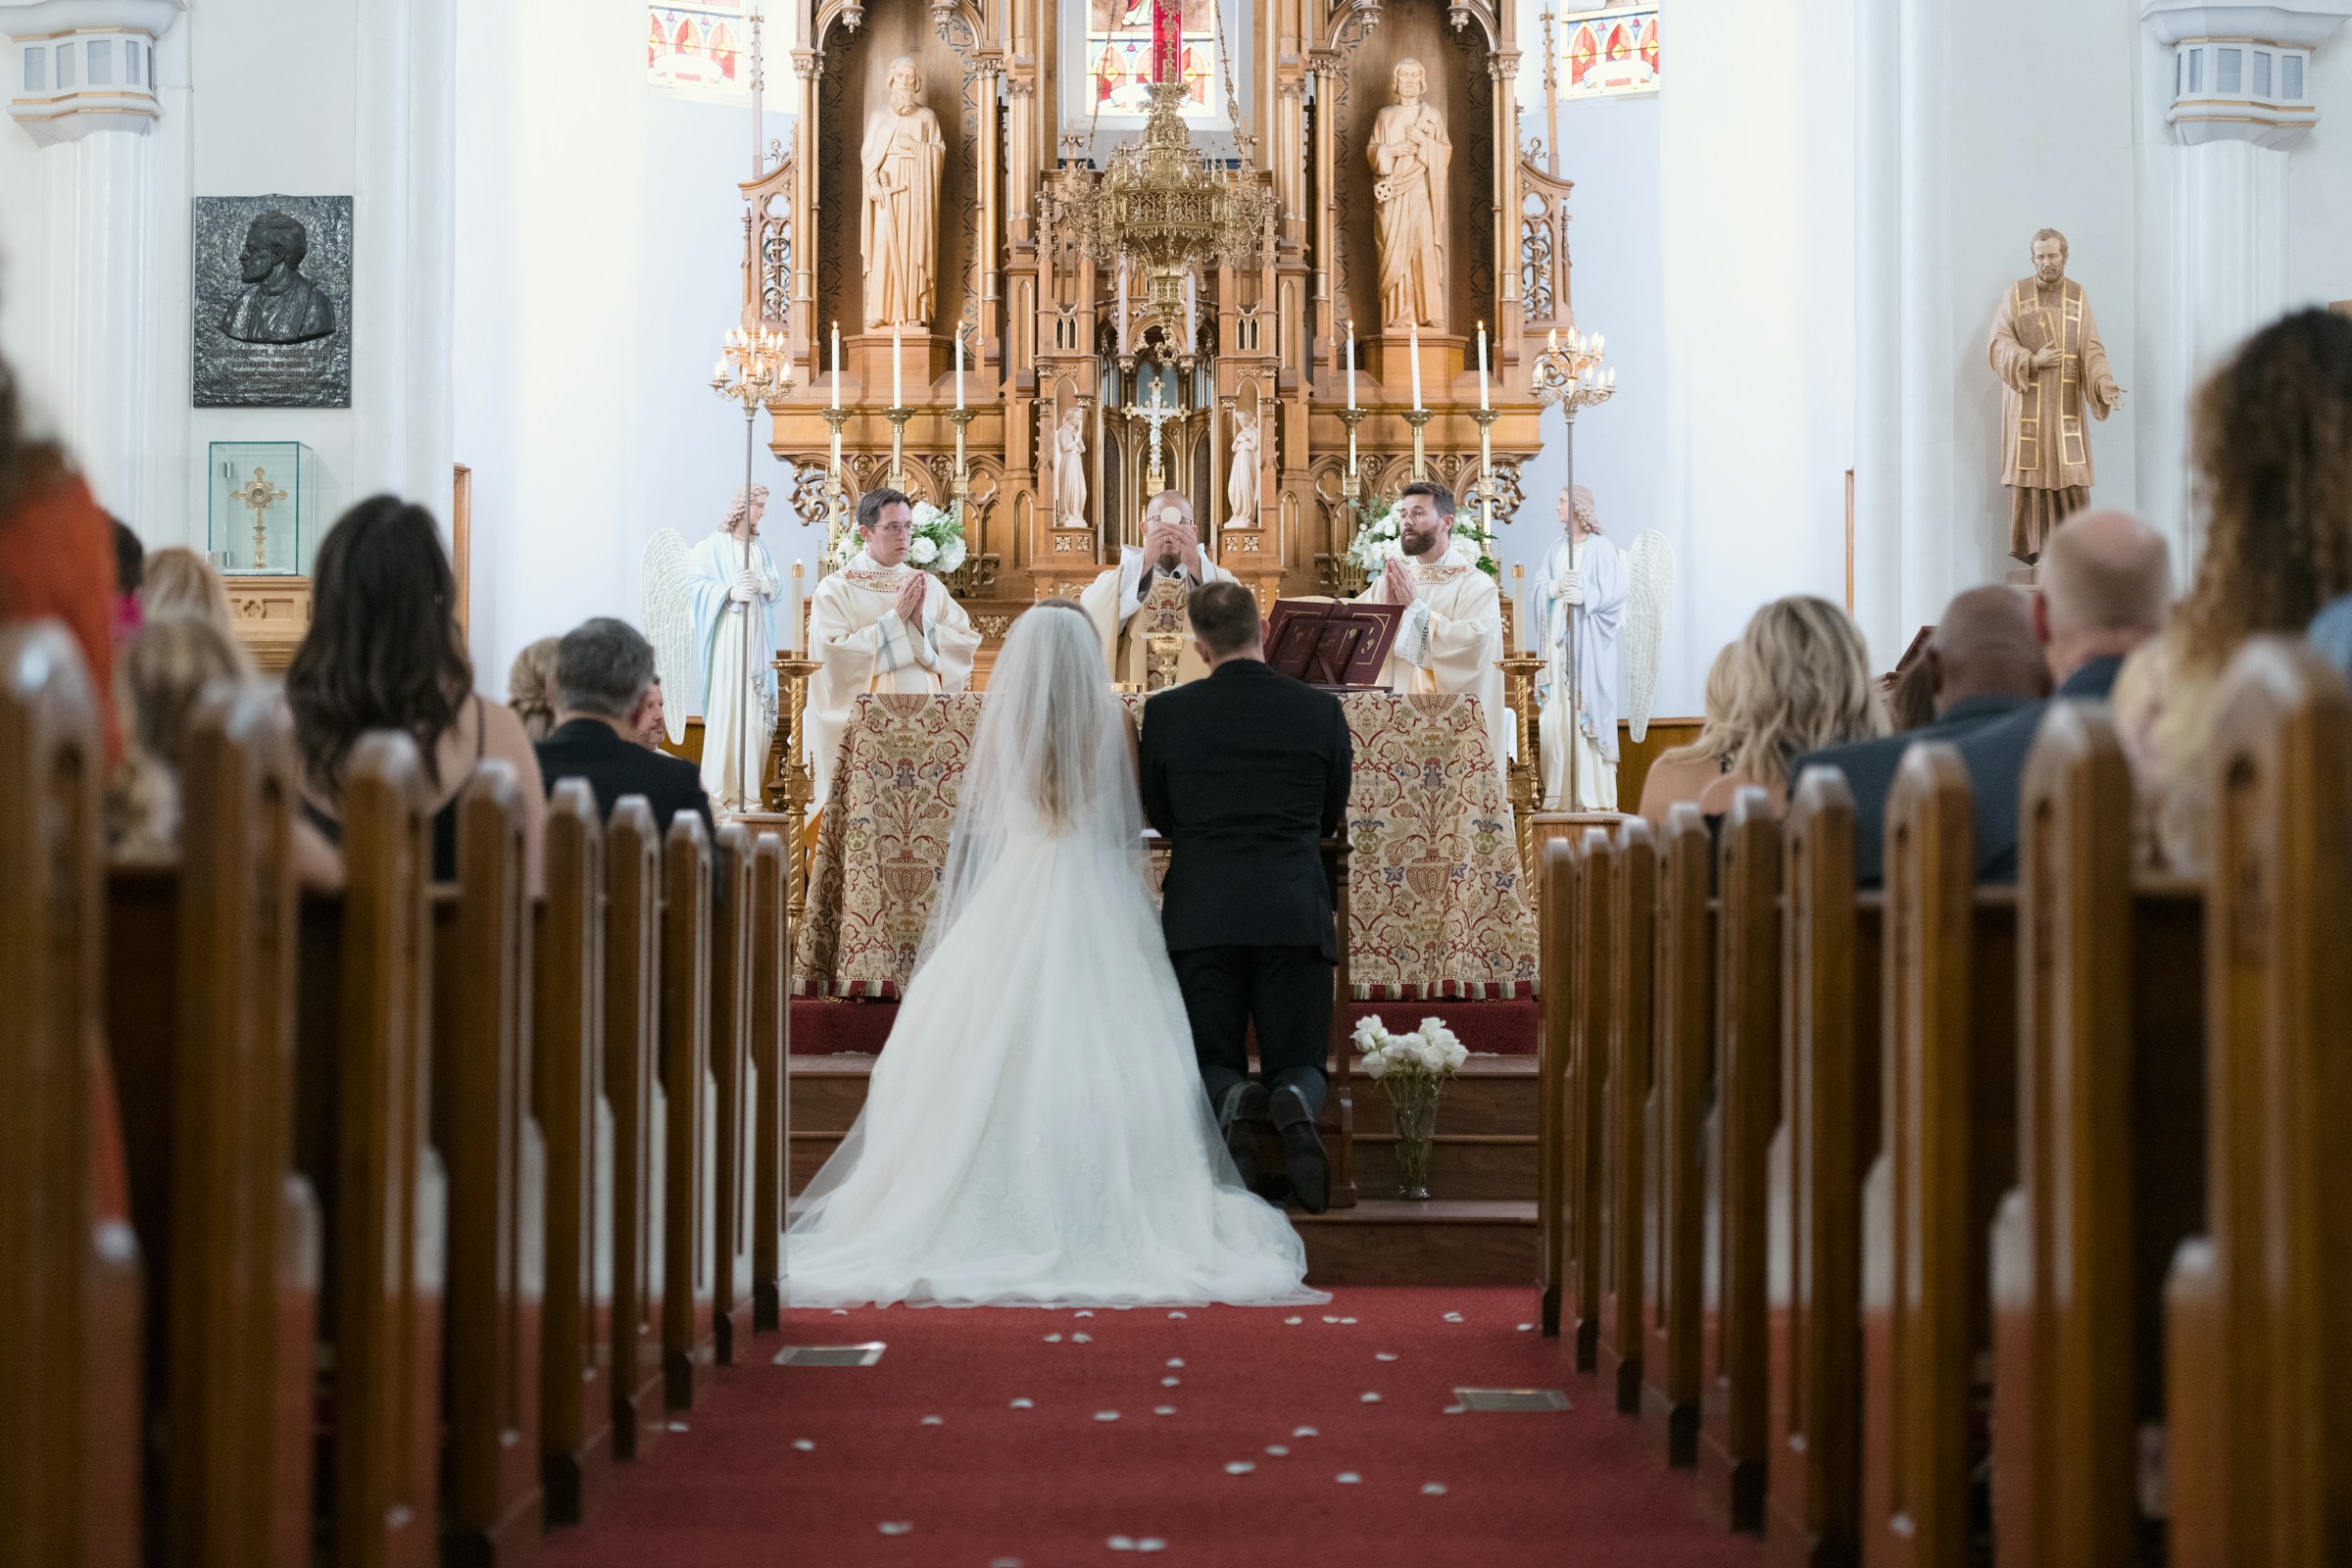 Une mariée et un marié à l'autel lors d'un mariage à l'église pendant que le prêtre élève le Saint Sacrement | Source : Unsplash